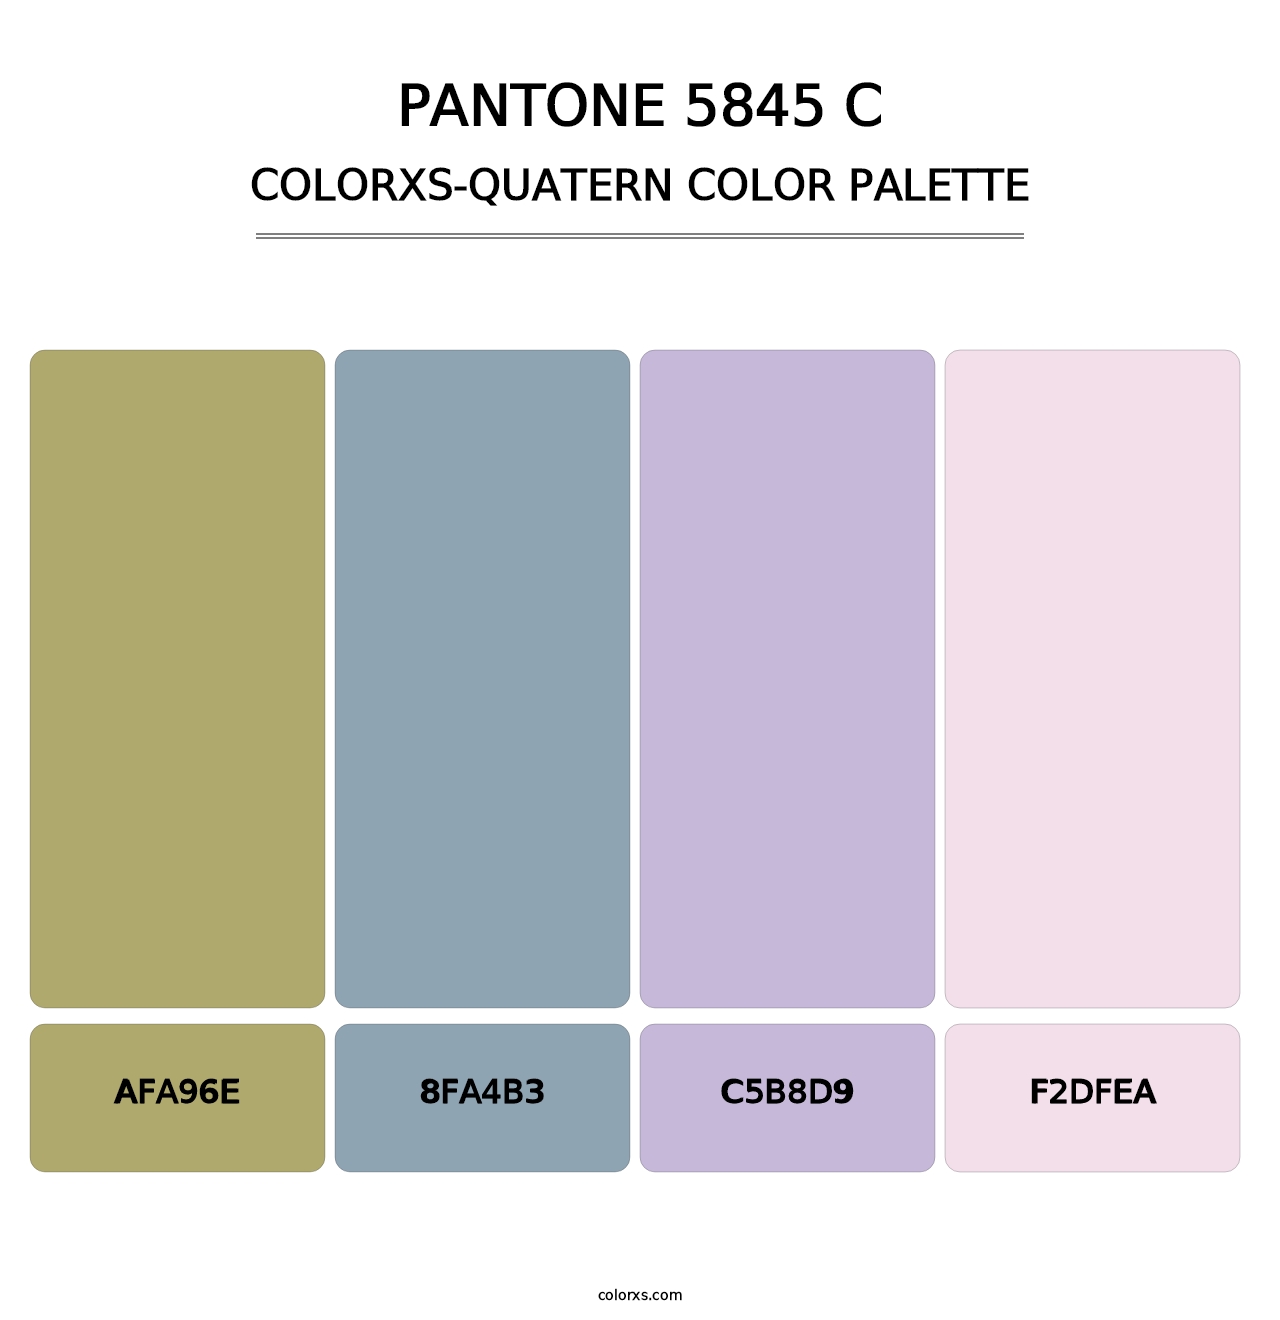 PANTONE 5845 C - Colorxs Quatern Palette